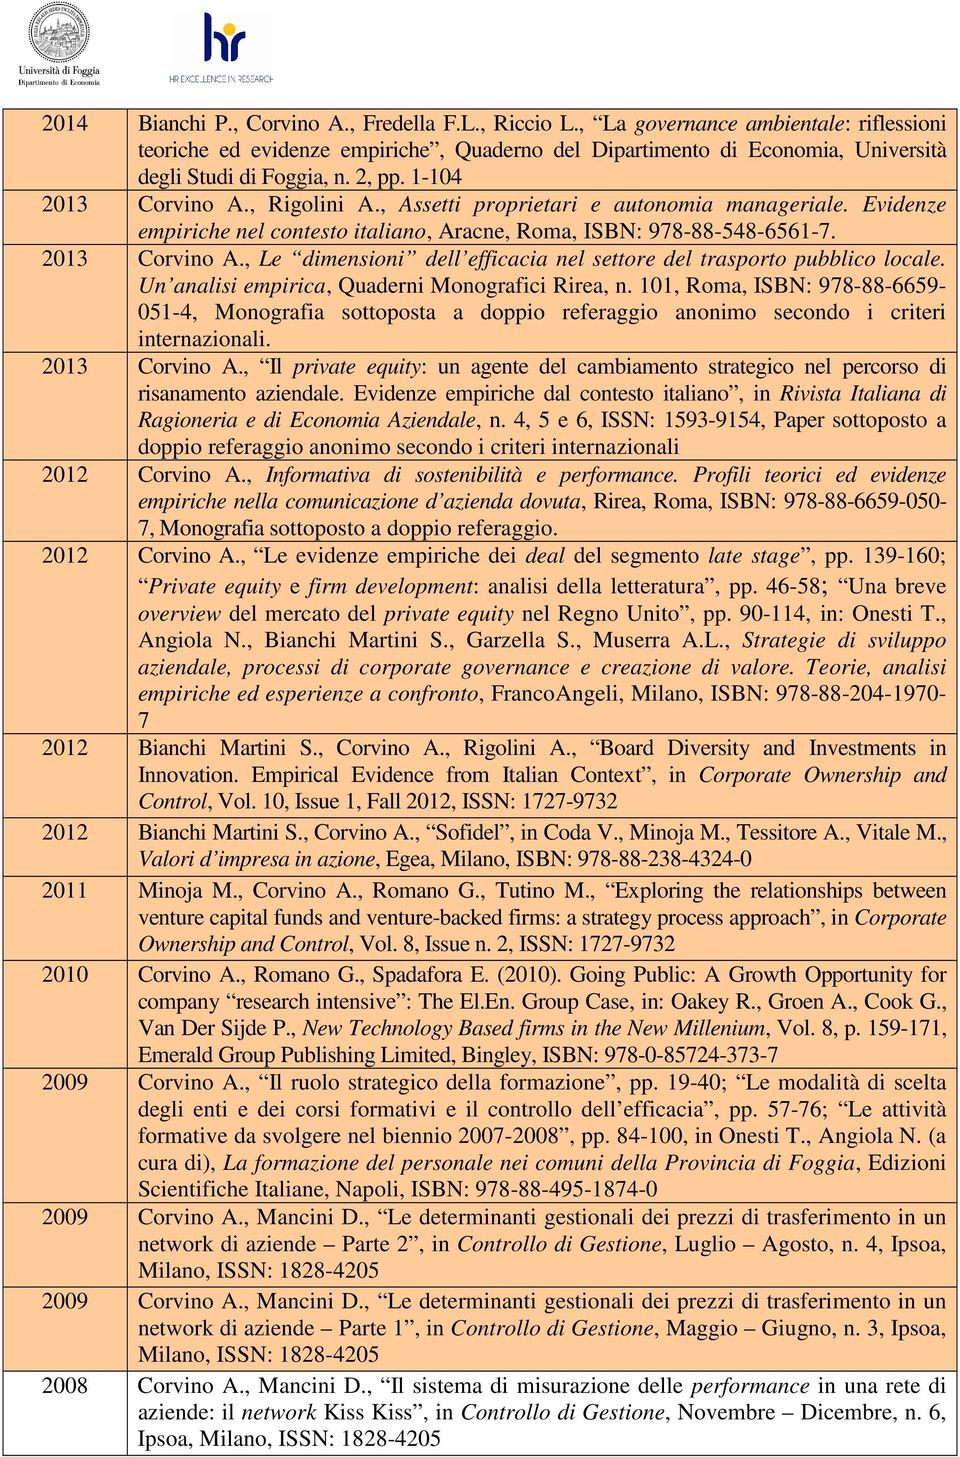 Un analisi empirica, Quaderni Monografici Rirea, n. 101, Roma, ISBN: 978-88-6659-051-4, Monografia sottoposta a doppio referaggio anonimo secondo i criteri internazionali. 2013 Corvino A.